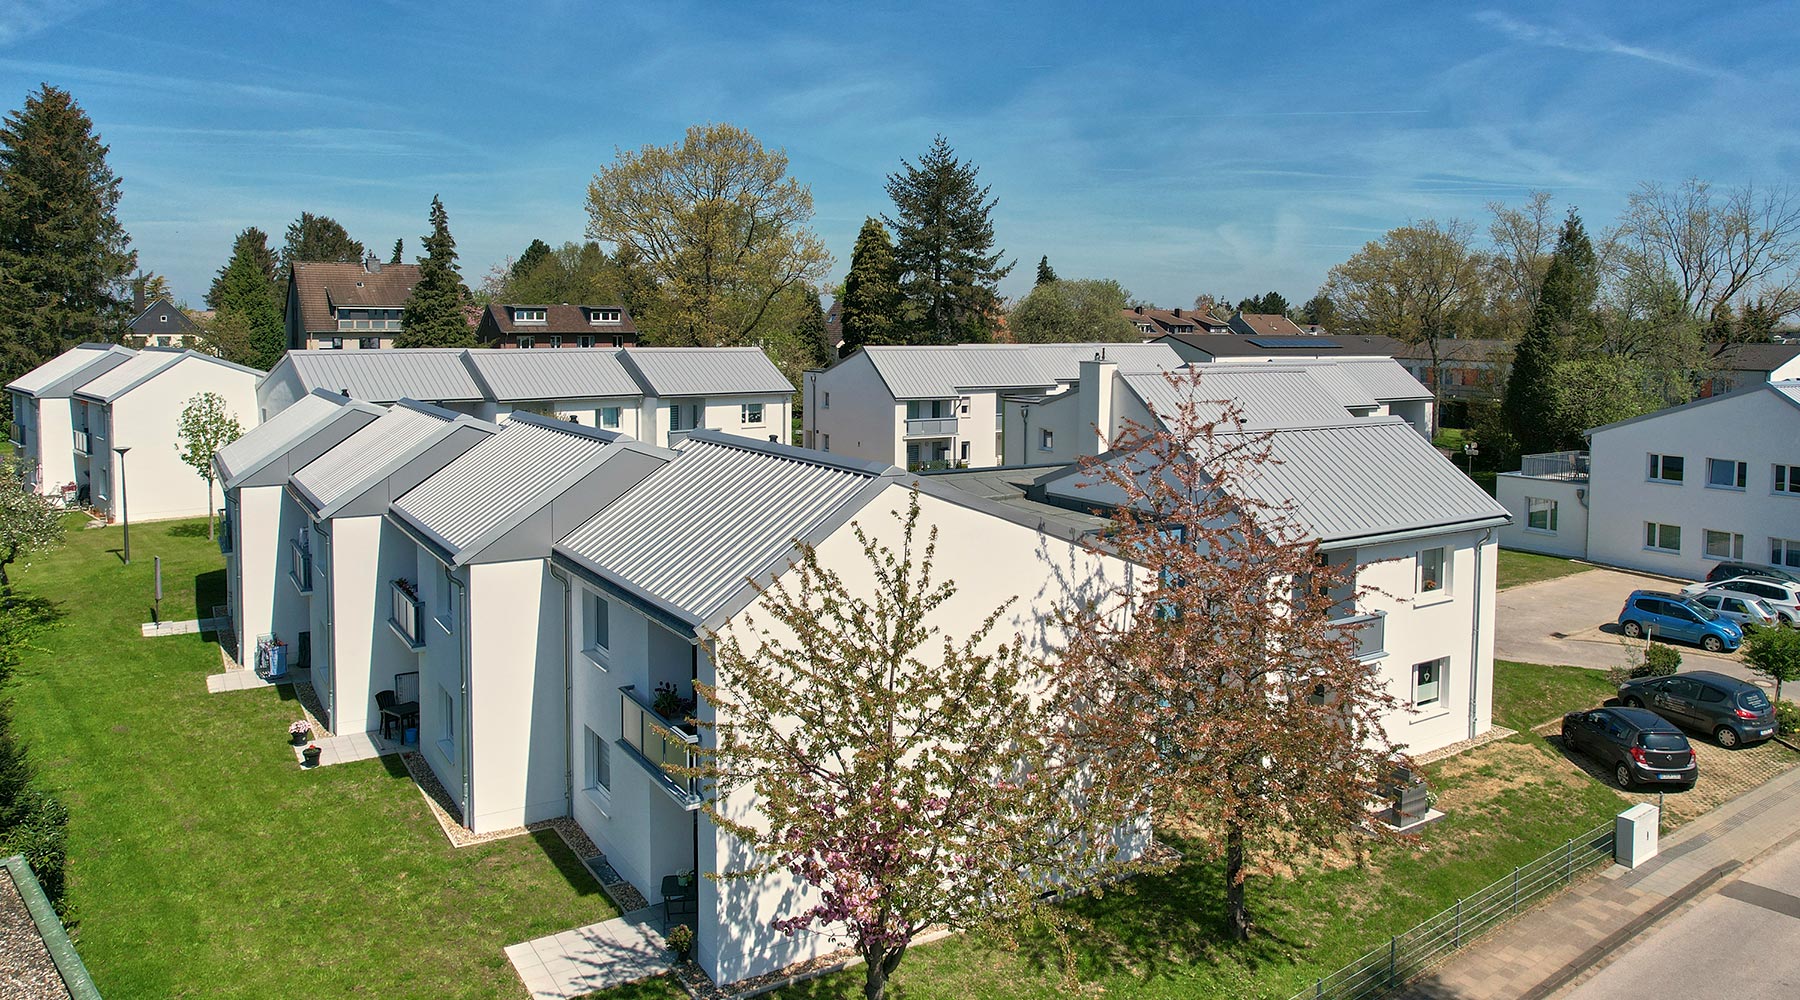 Wohnanlage am Reulert in Aachen. Draufsicht eines Wohnkomplexes: Weiße Gebäude mit grauem Spitzdach und offenem Garten.